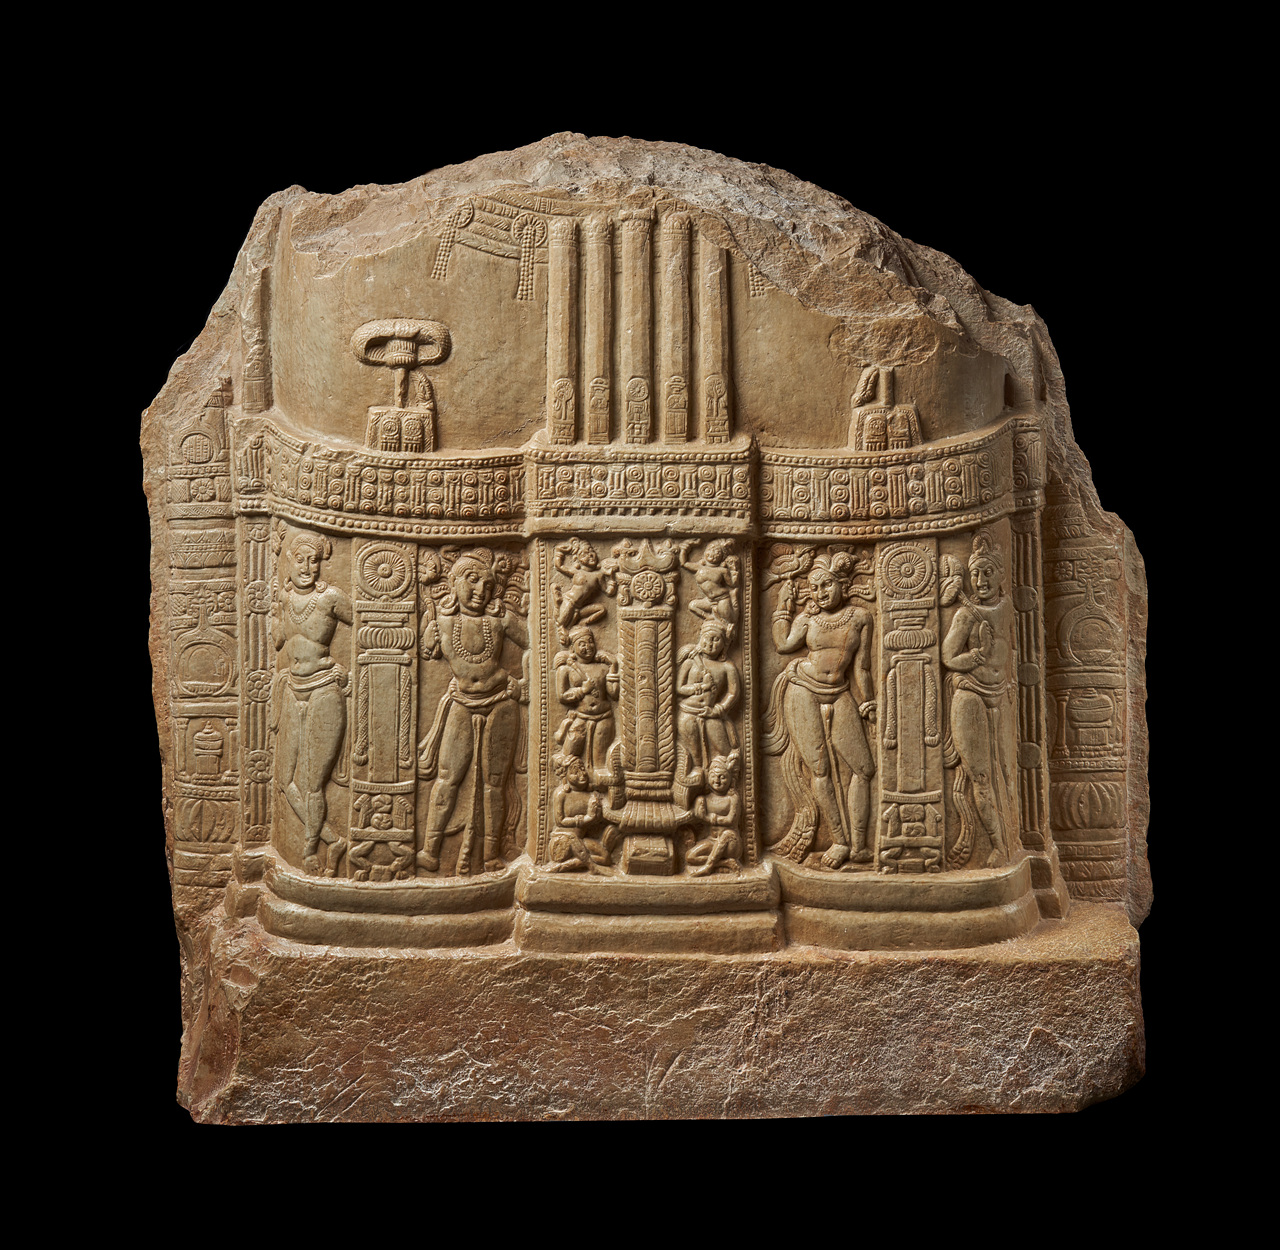 불타는 기둥을 향한 경배, 1세기, 인도 아마라바티고고학박물관. 사진 제공 국립중앙박물관.